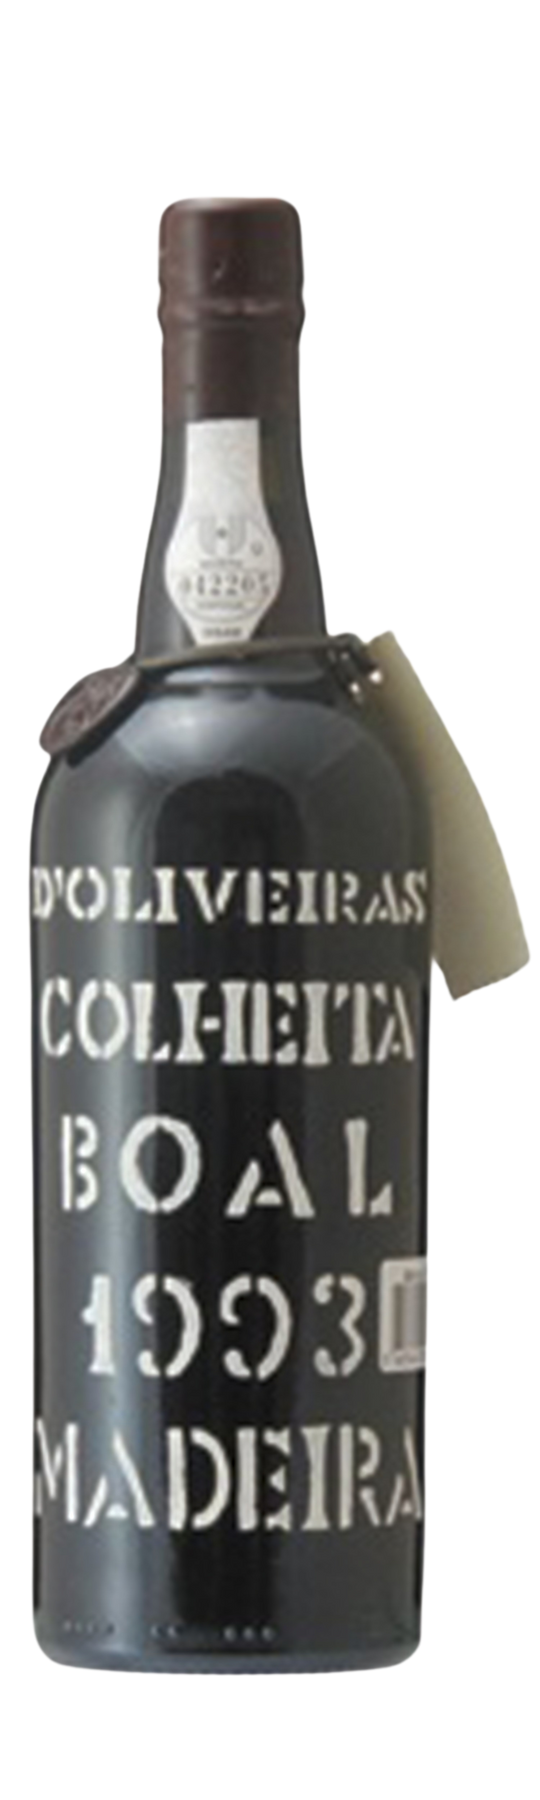 D'Oliveira Boal Vintage 20% 1993 75cl Madeira